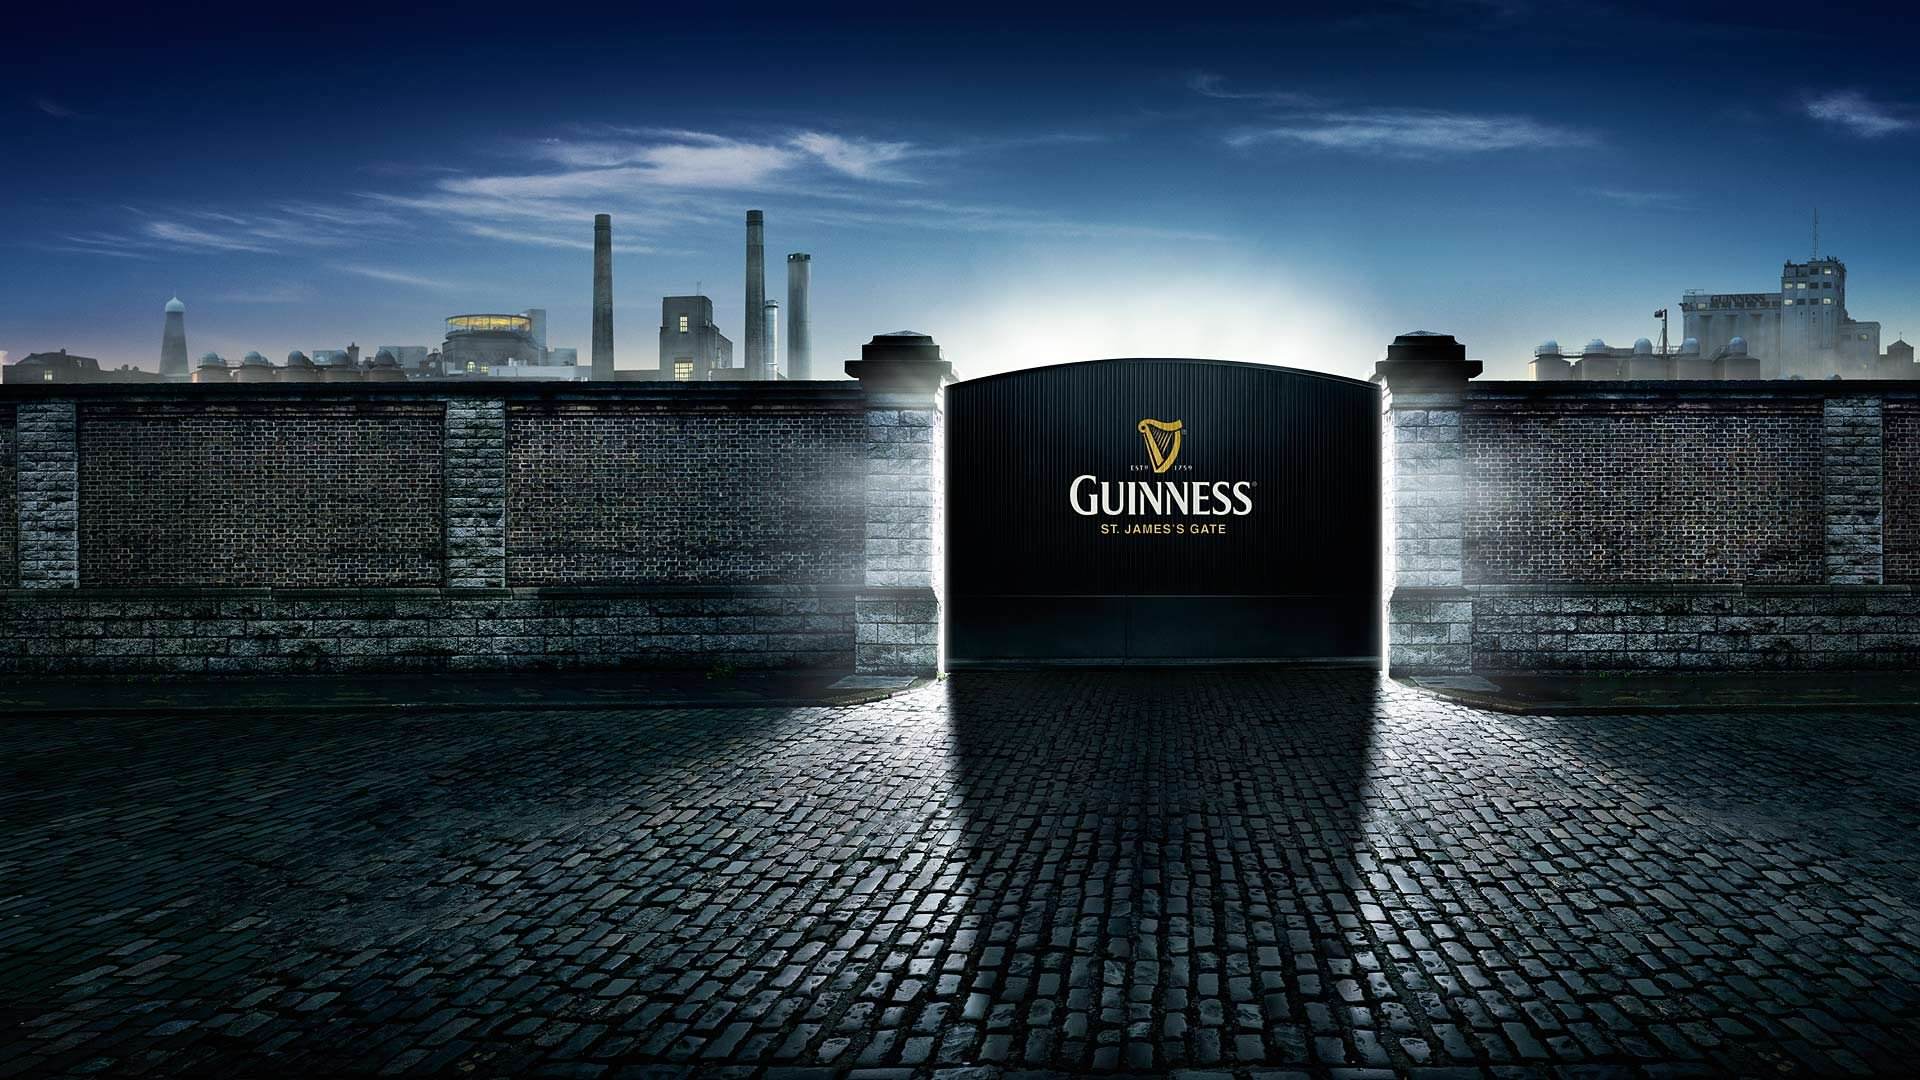 Guinness wallpaper 1920x1080 Full HD (1080p) desktop background